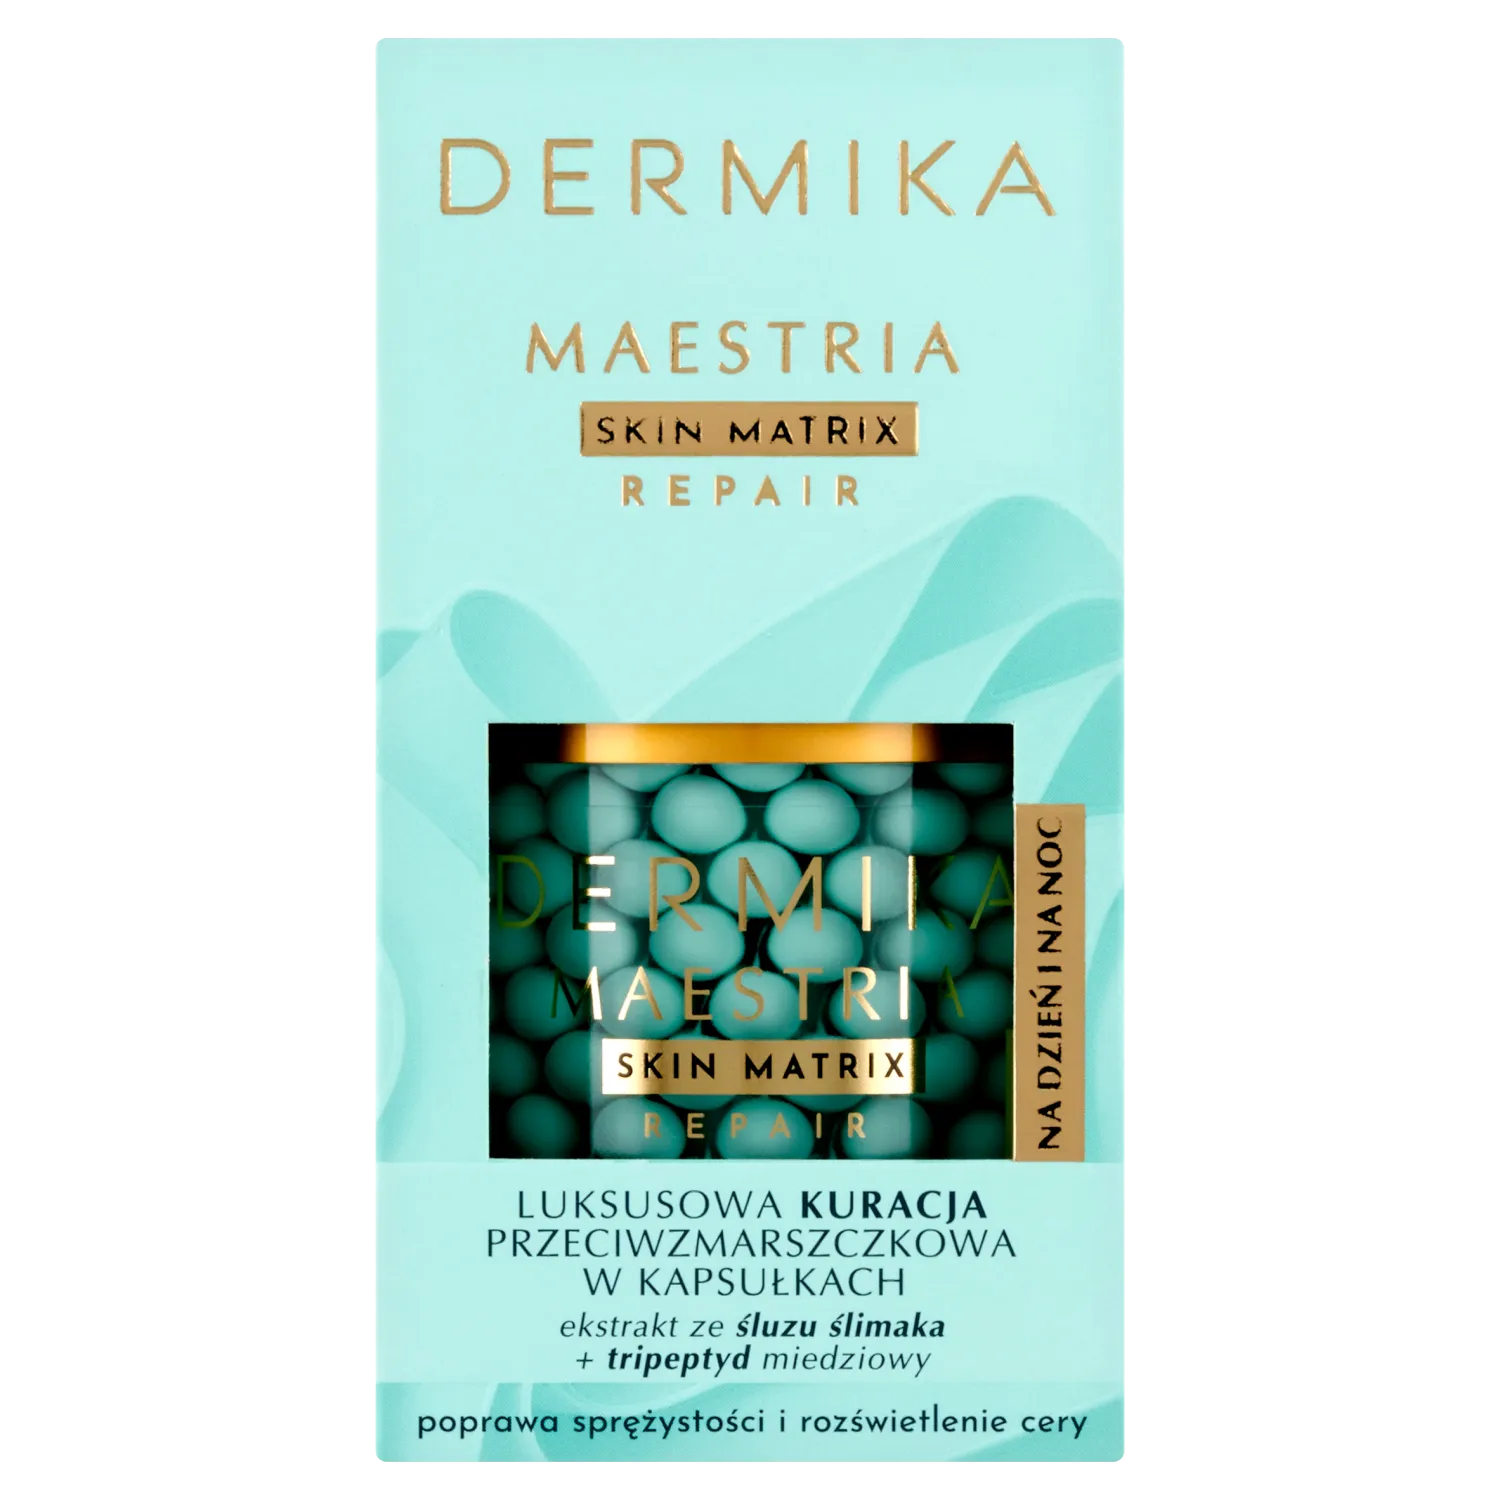 Dermika Maestria luksusowa kuracja przeciwzmarszczkowa w kapsułkach, 60 ml 